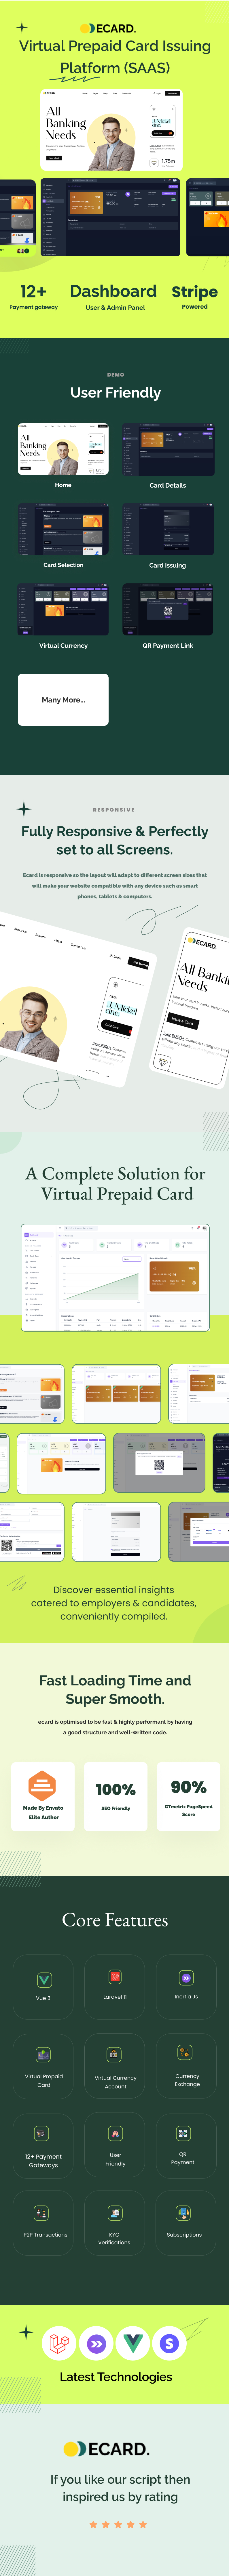 E-Card - Virtual Prepaid Card Issuing Platform (SAAS). - 5